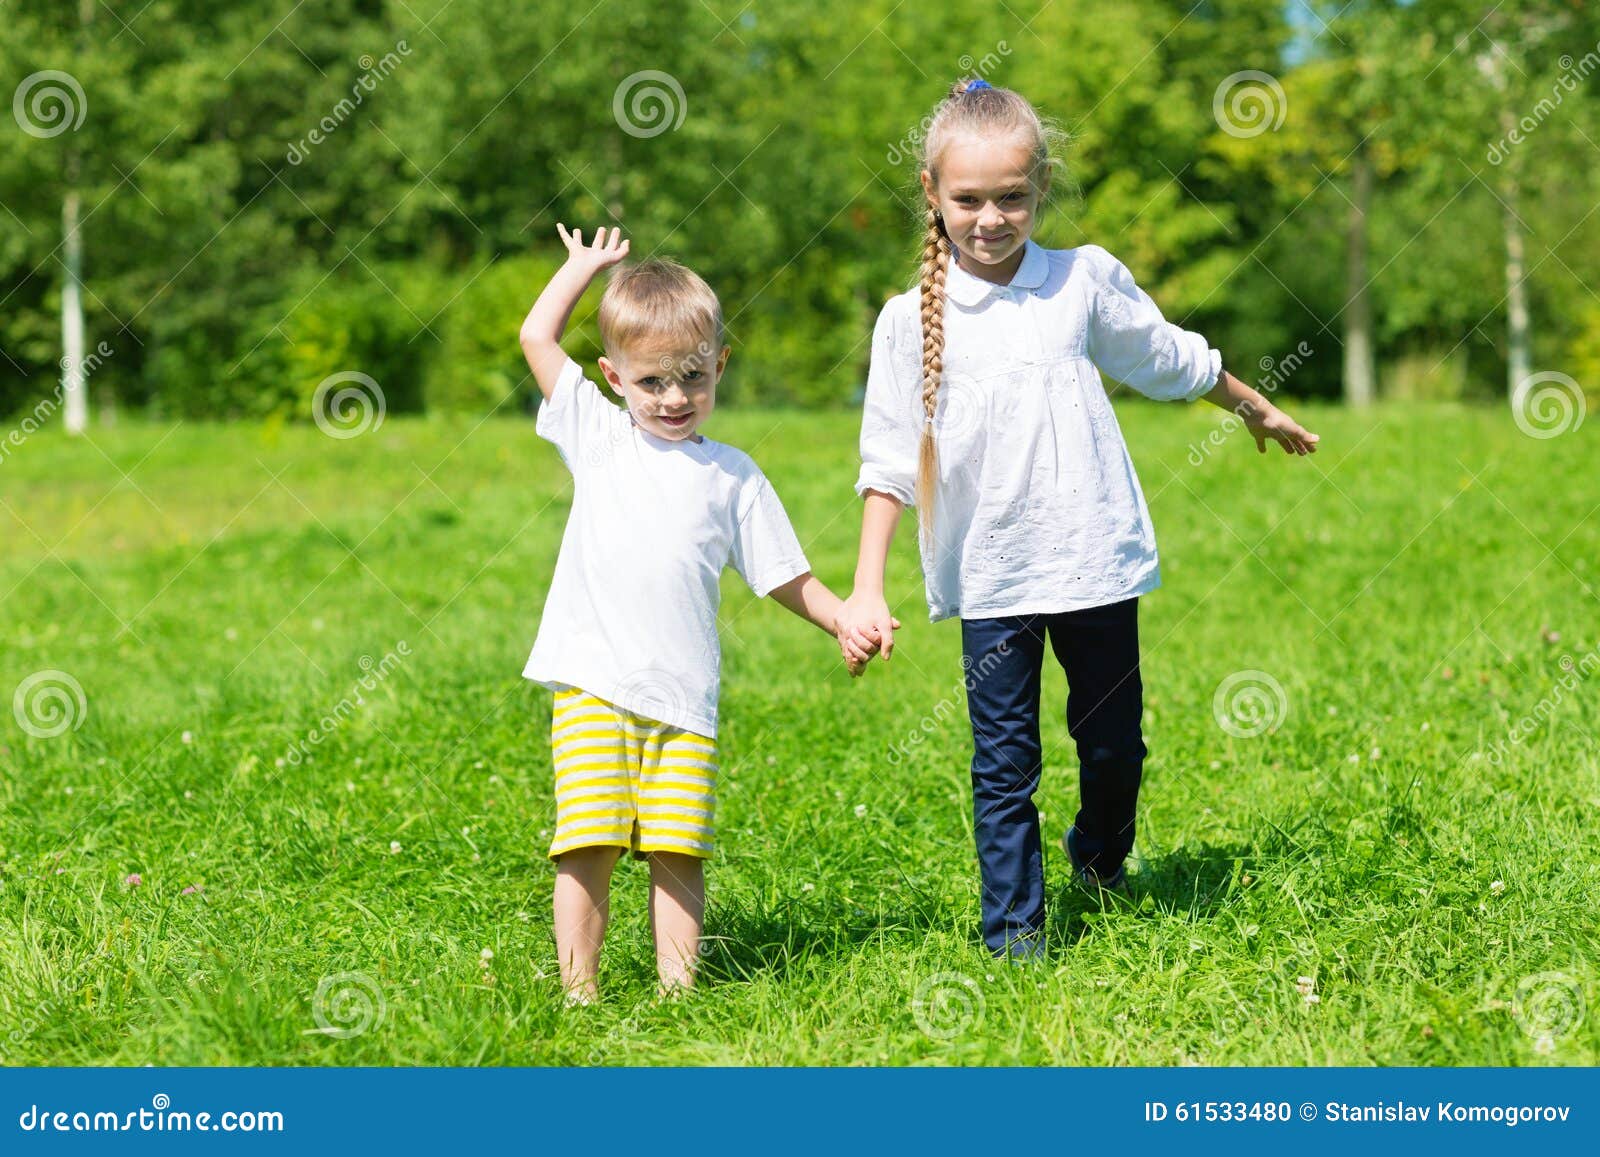 室外的兄弟和的姐妹 库存图片. 图片 包括有 愉快, 乐趣, 孩子, 减速火箭, 系列, 天空, 童年, 生活方式 - 39802227